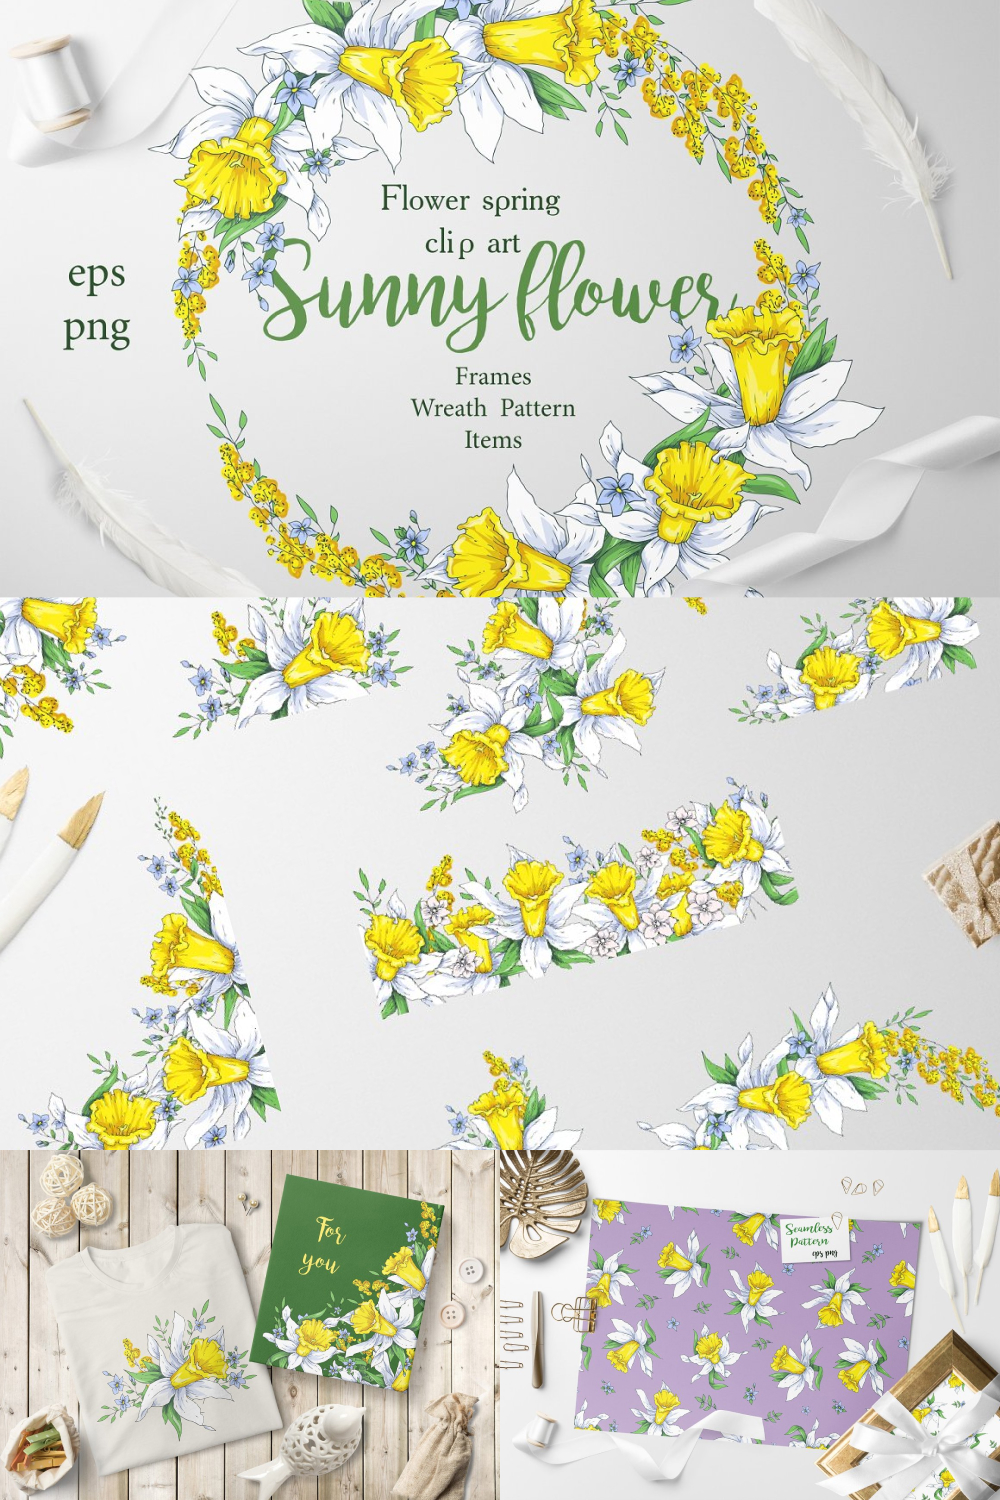 Sunny Flowers – Spring Clip Art pinterest image.